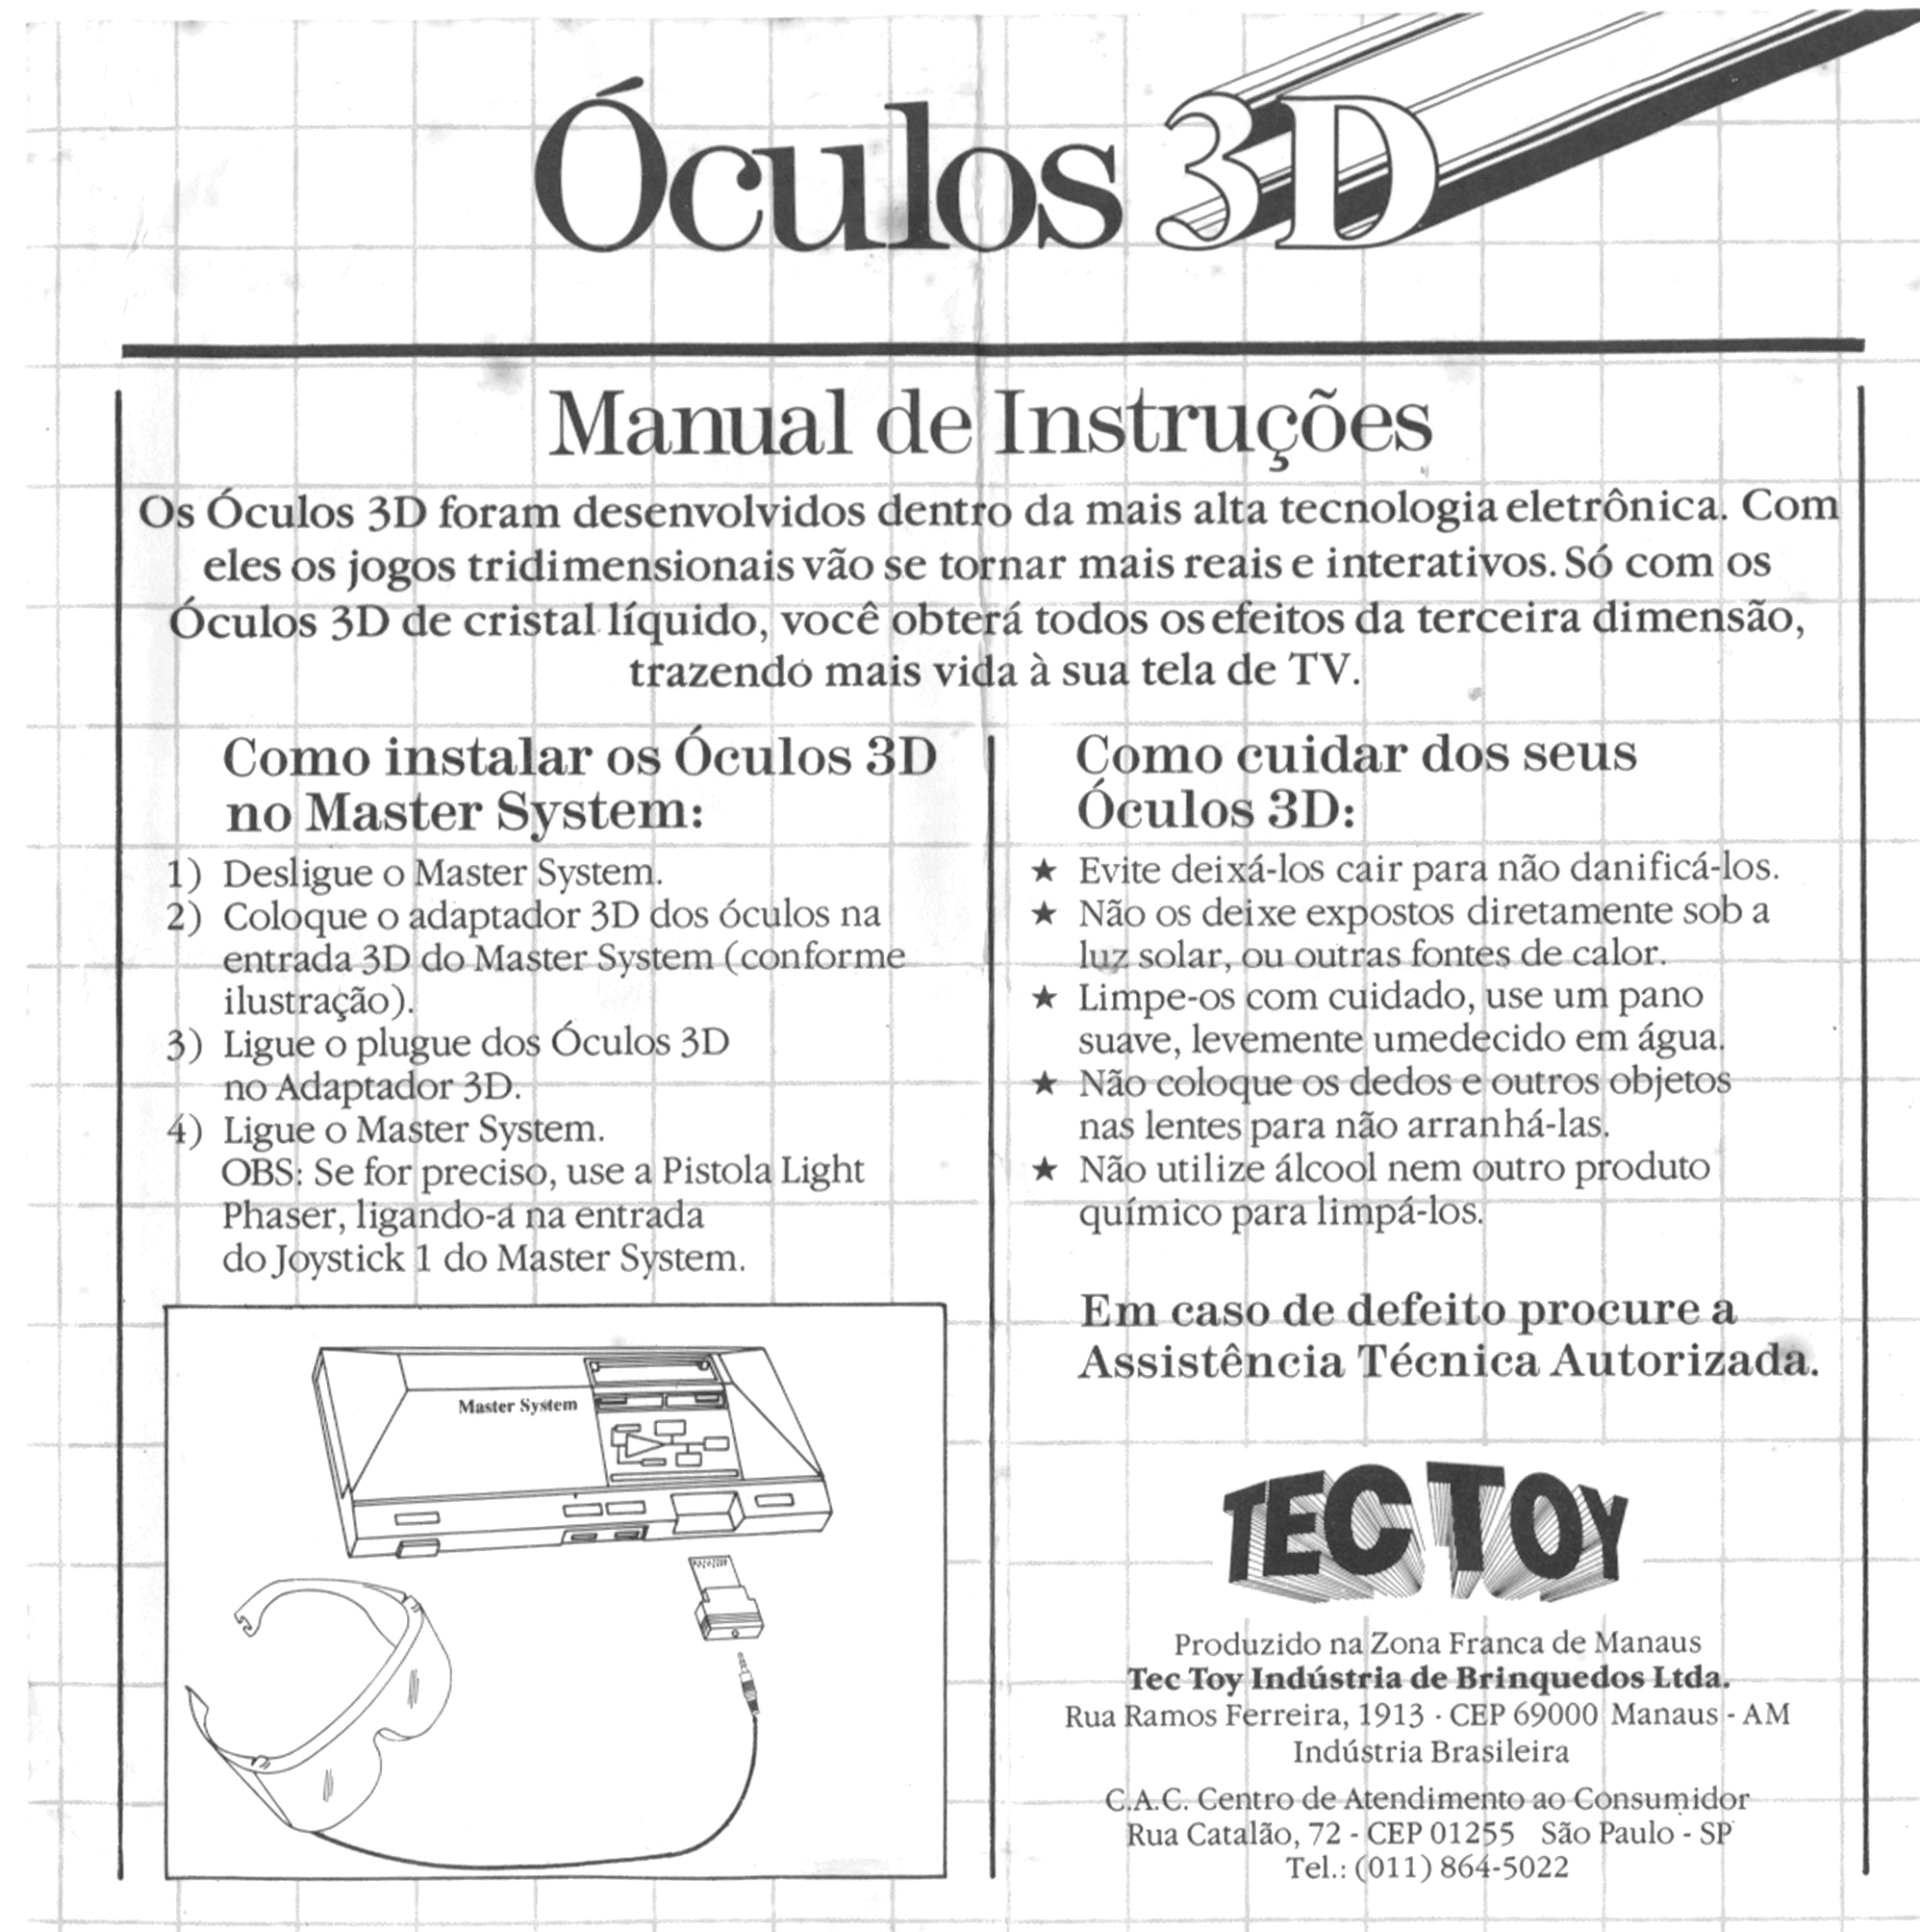 Manual Oculos 3D.jpg